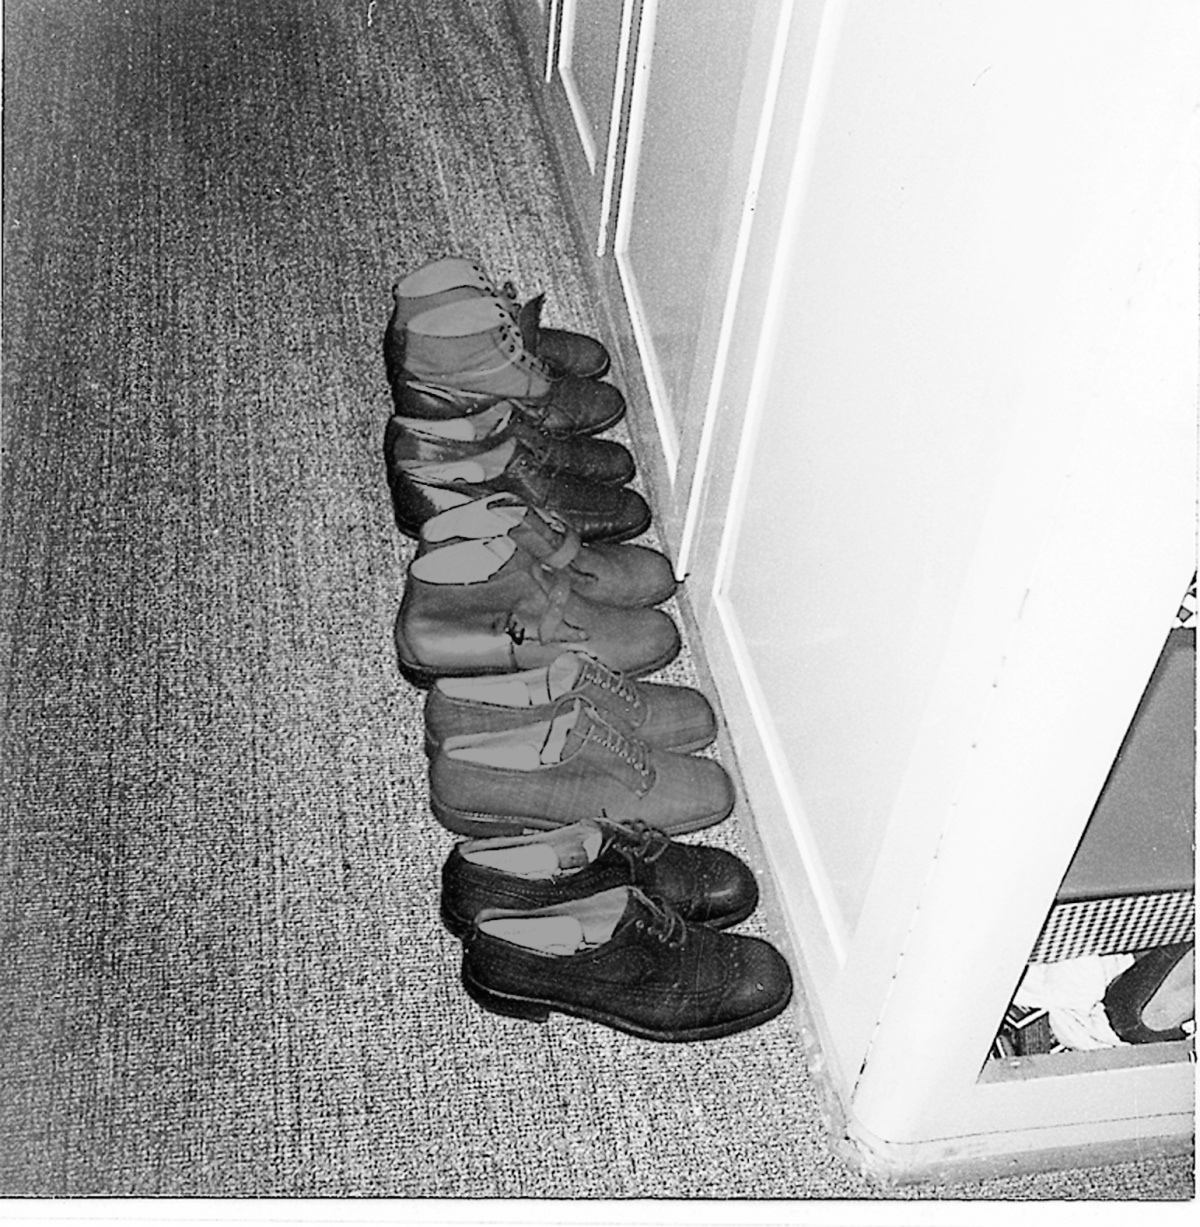 Bazons anschaulicher Versuch, sich einen Begriff von Besitz zu machen., Bild: Experimenta, Frankfurt am Main 1966
Schuhe.